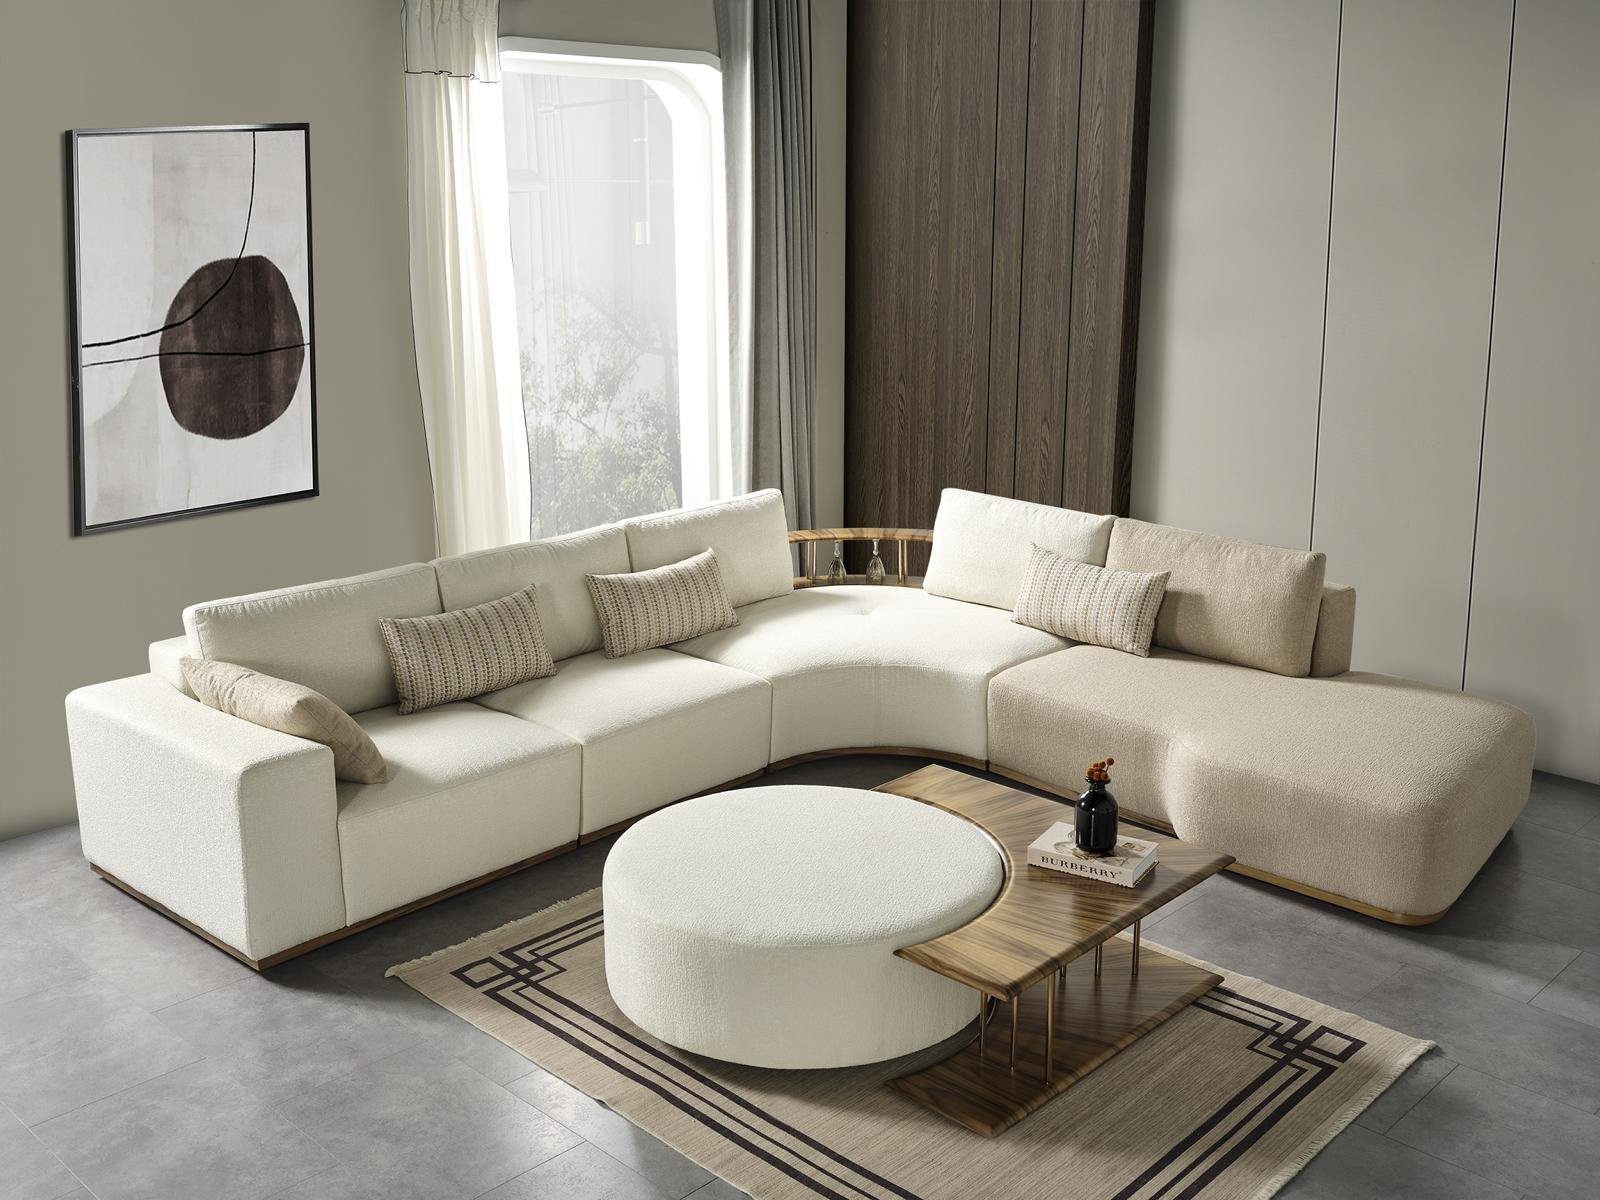 JVmoebel Hocker neu Design mit Polster weiß Textil Modern Wohnzimmer Hocker Holz